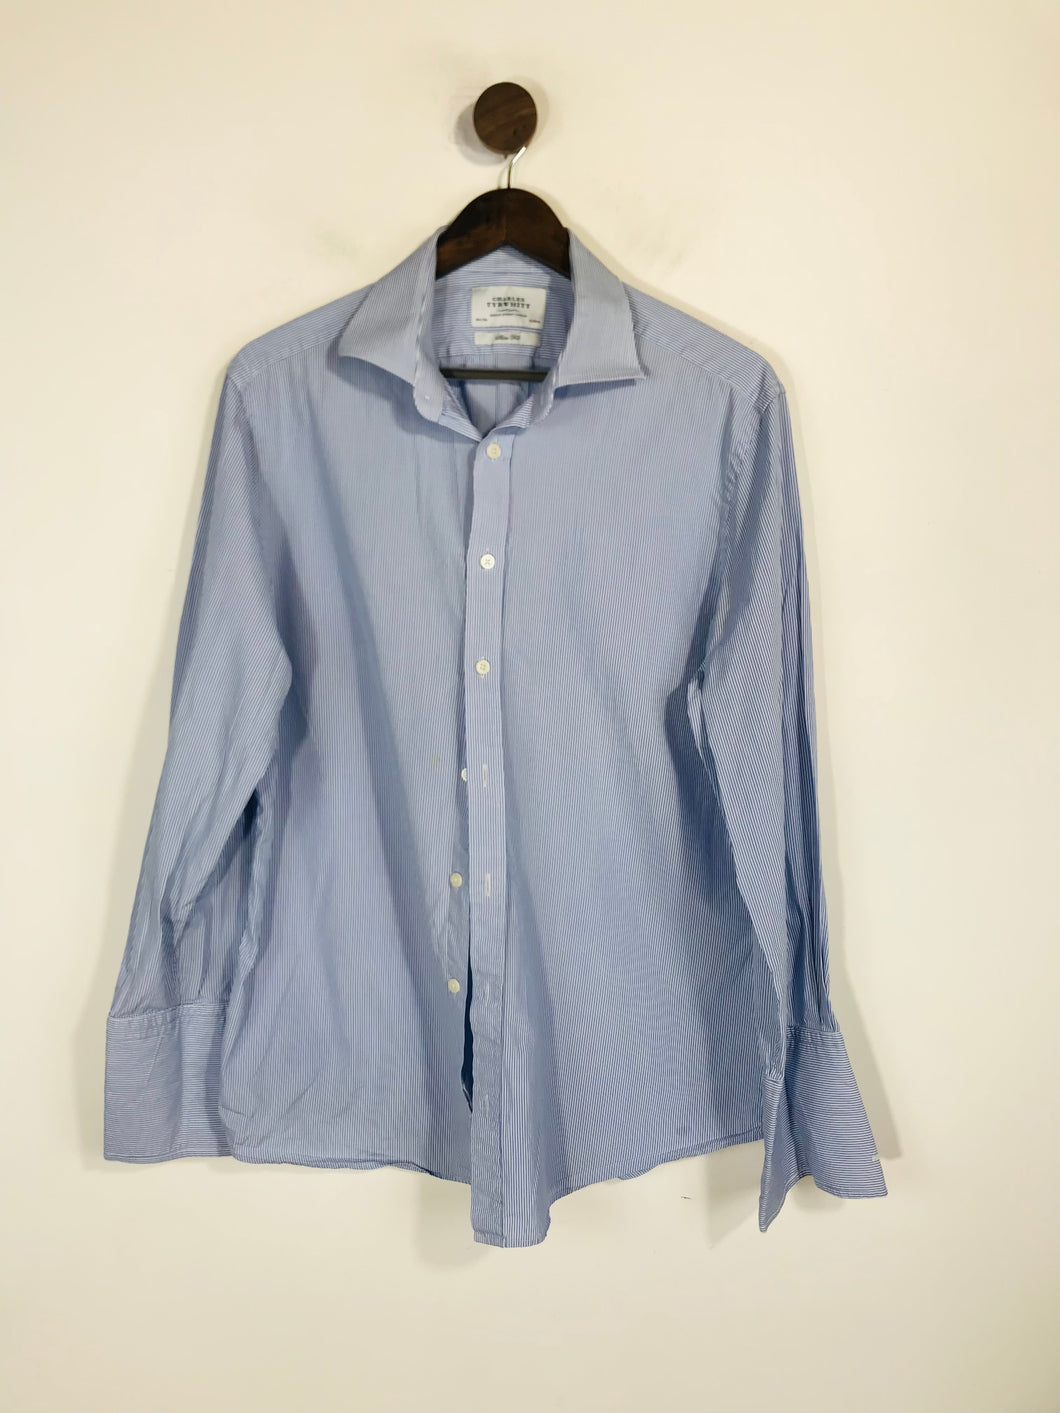 Charles Tyrwhitt Men's Cotton Striped Button-Up Shirt | 16.5 42 | Blue